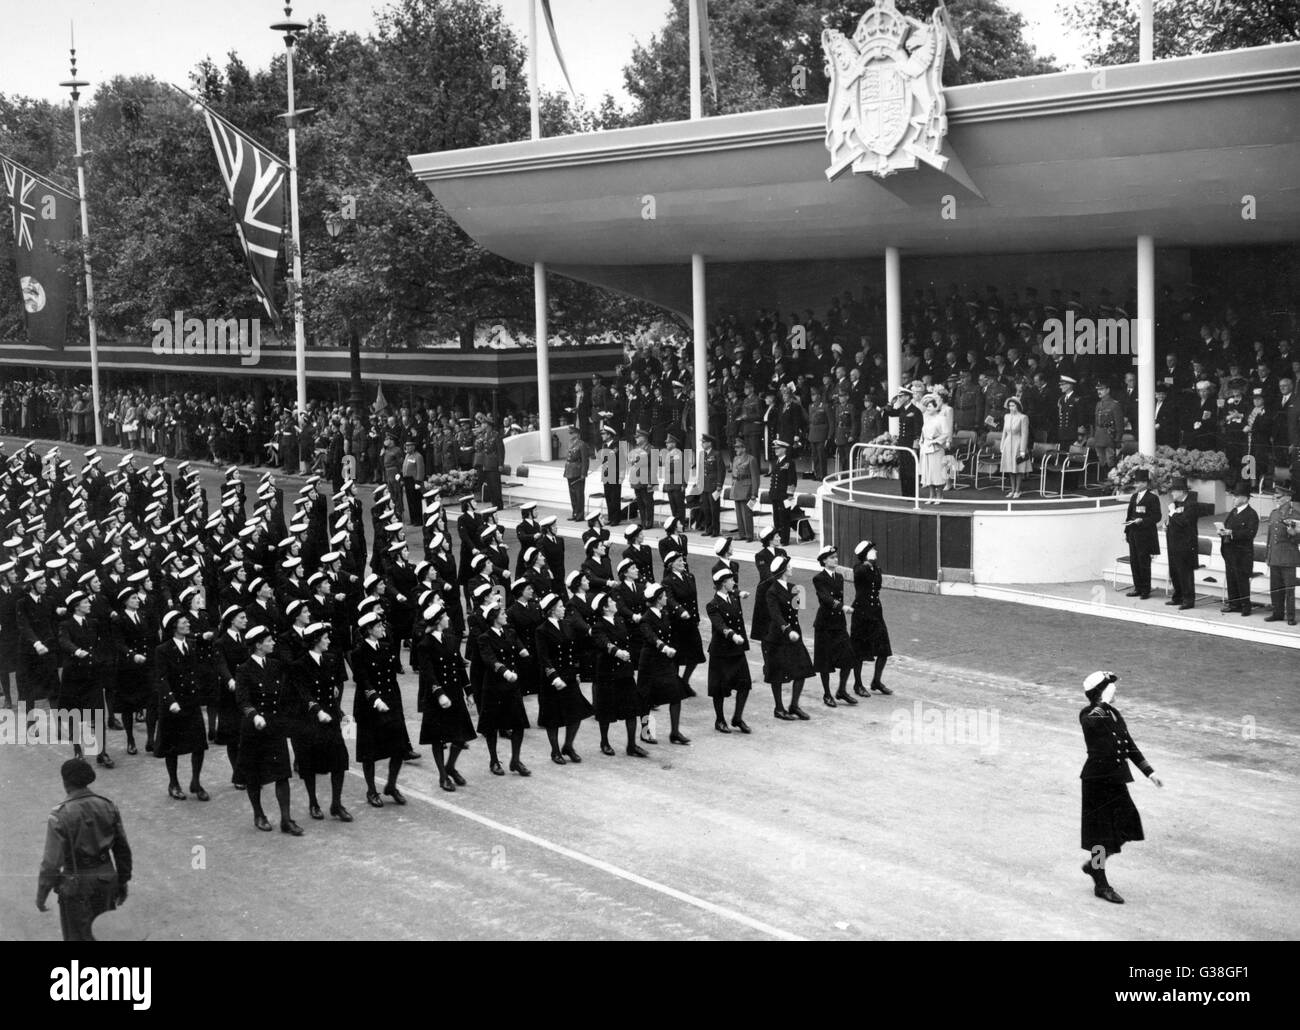 La revue de la Victoire : Le contingent WRNS passe le point de salut (le roi George VI, la Reine Elizabeth, Princess Margaret et les autres membres de la famille royale). Date : 8 juin 1946 Banque D'Images